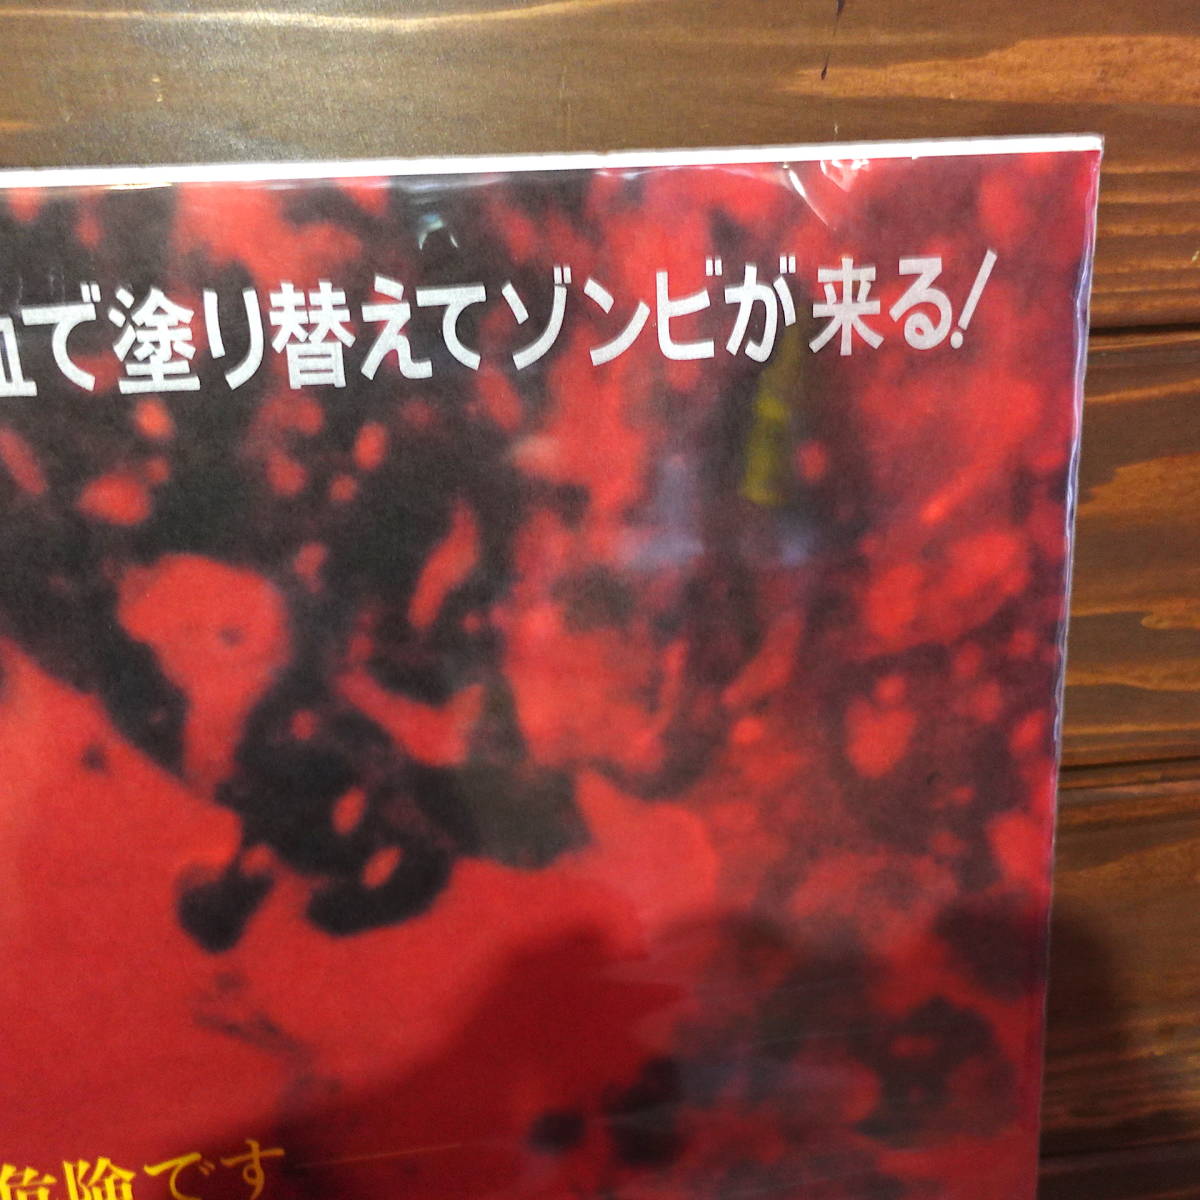  фильм постер [zombi]1979 год первый в Японии публичный версия /Dawn of the Dead/Zombie/ George *A*romero постановка / Tom *sa vi -ni/ ужасы 